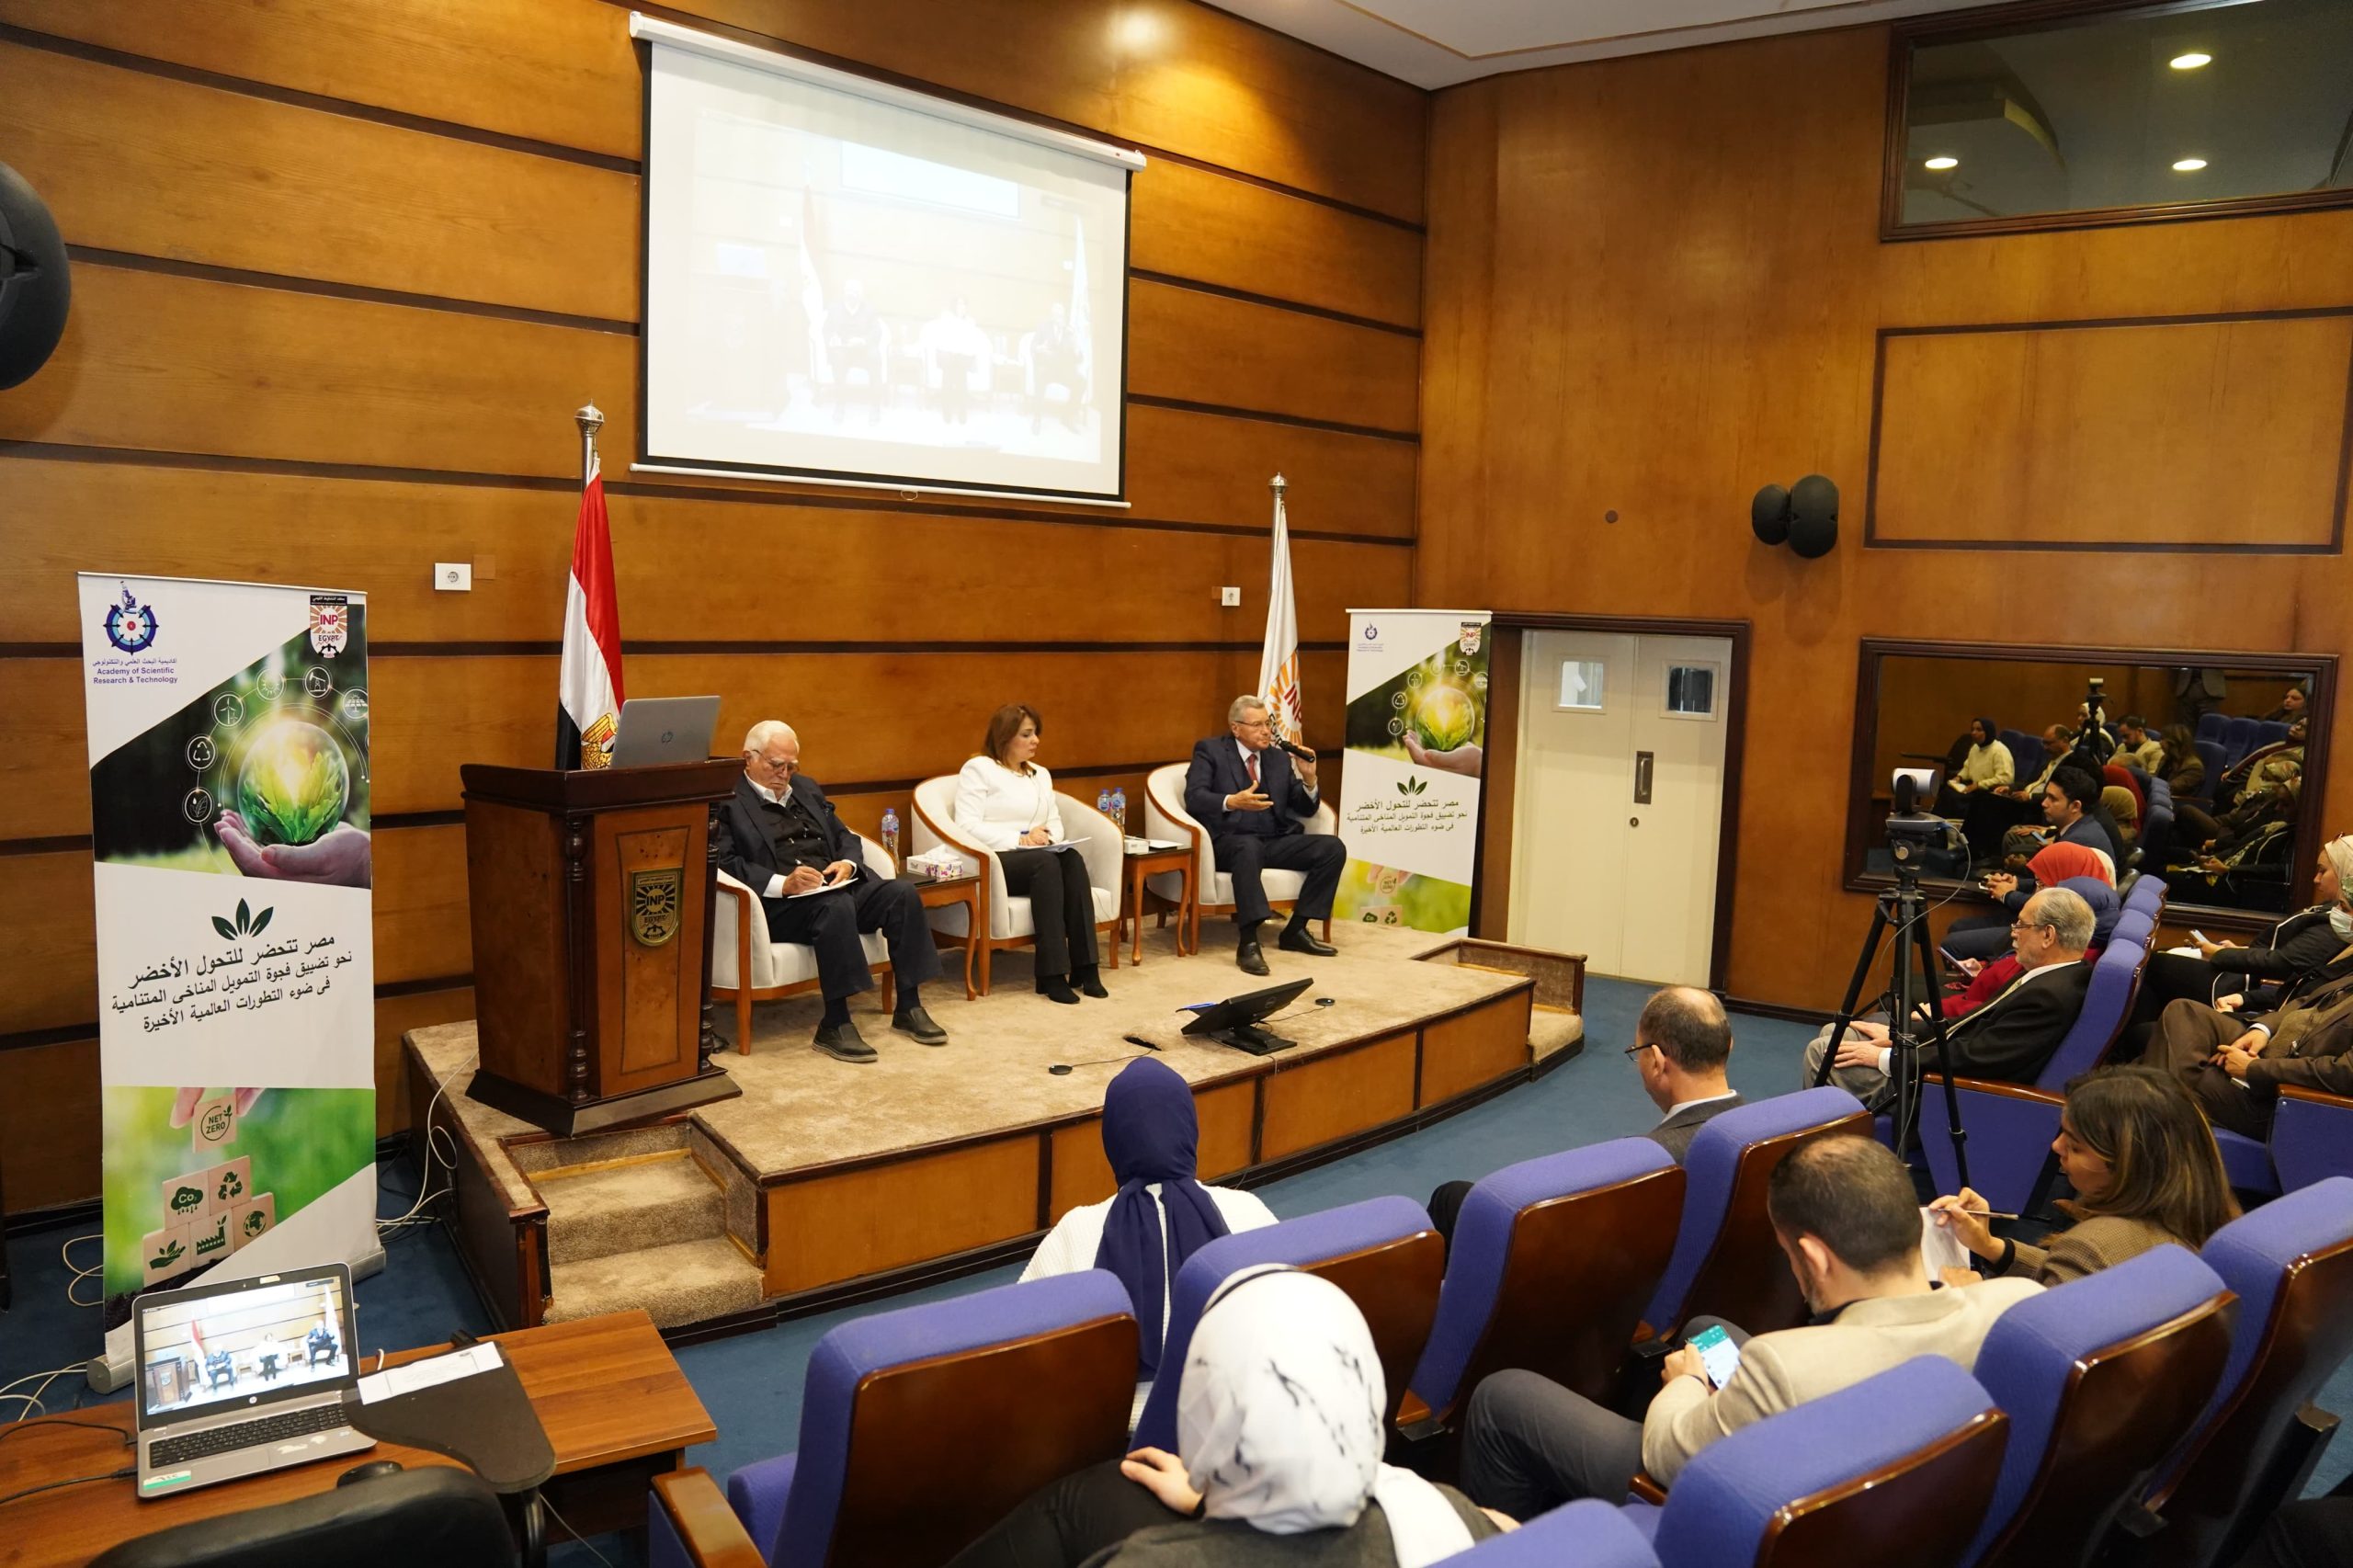 معهد التخطيط القومي يعقد ندوة حول "التحول الأخضر في مصر: الفرص والتحديات" 1